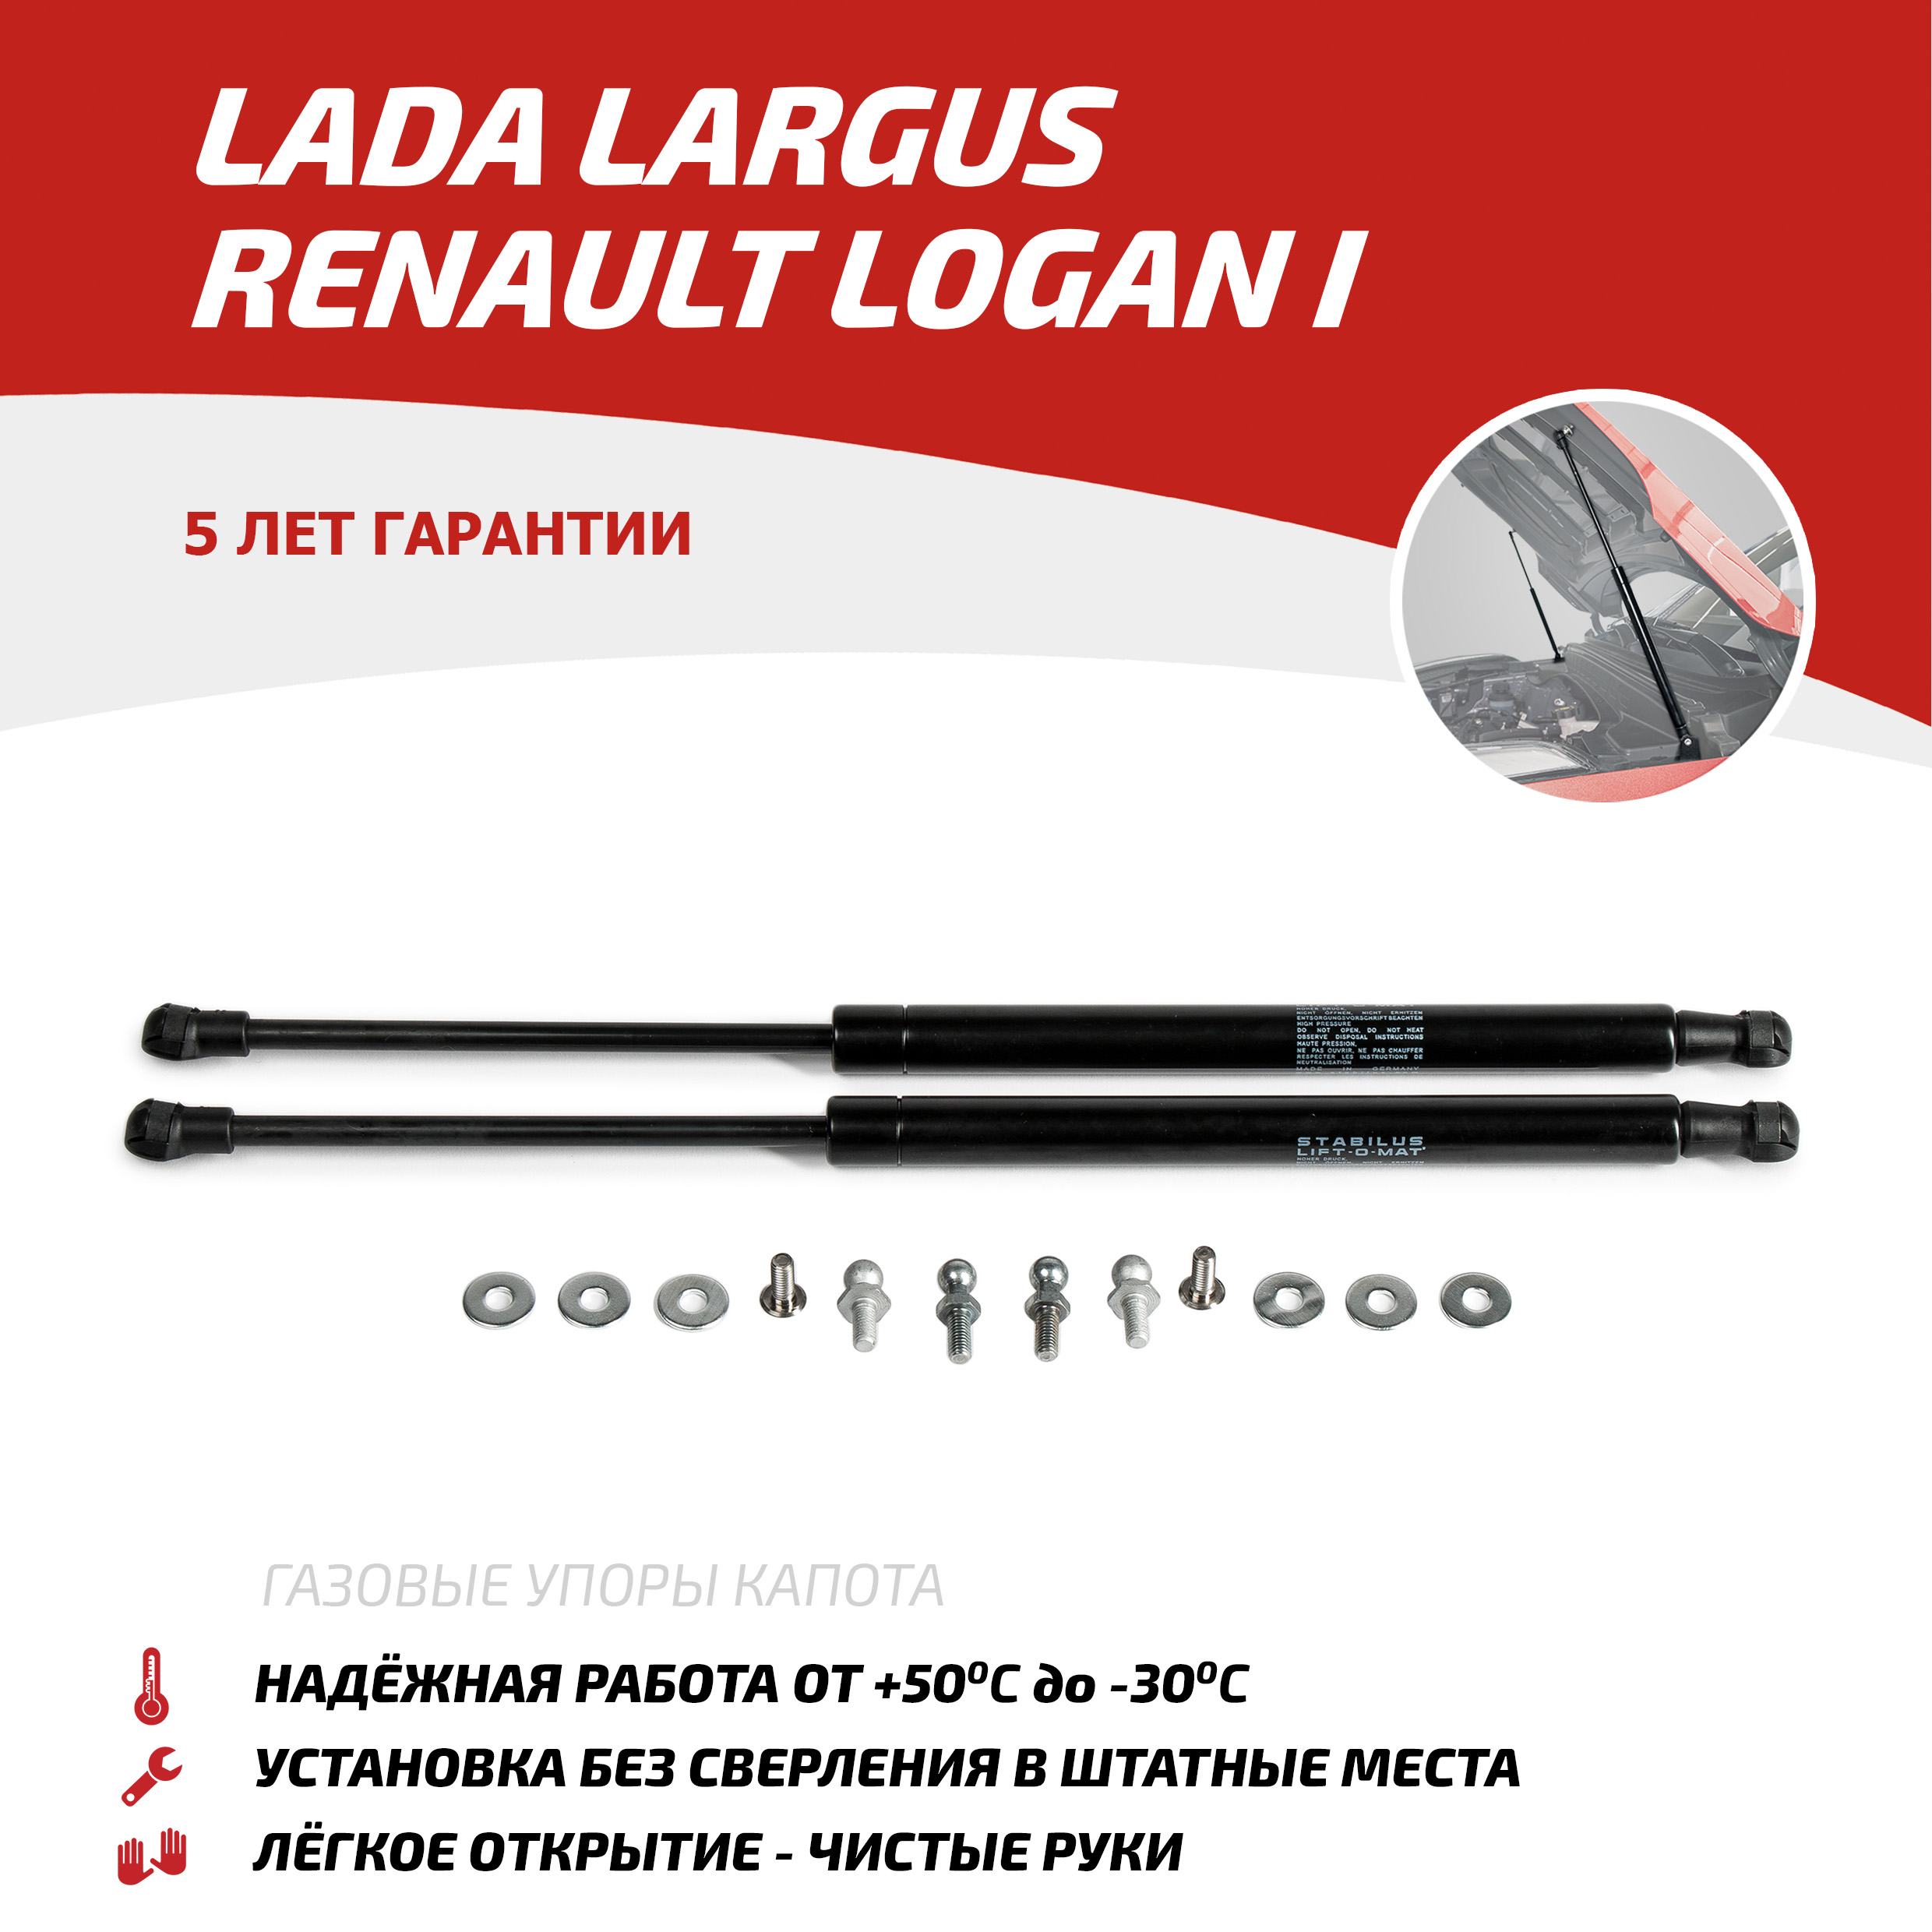 Газовые упоры капота АвтоУпор Lada Largus 2012-2021/Renault Logan I 2004-2015, ULALAR012